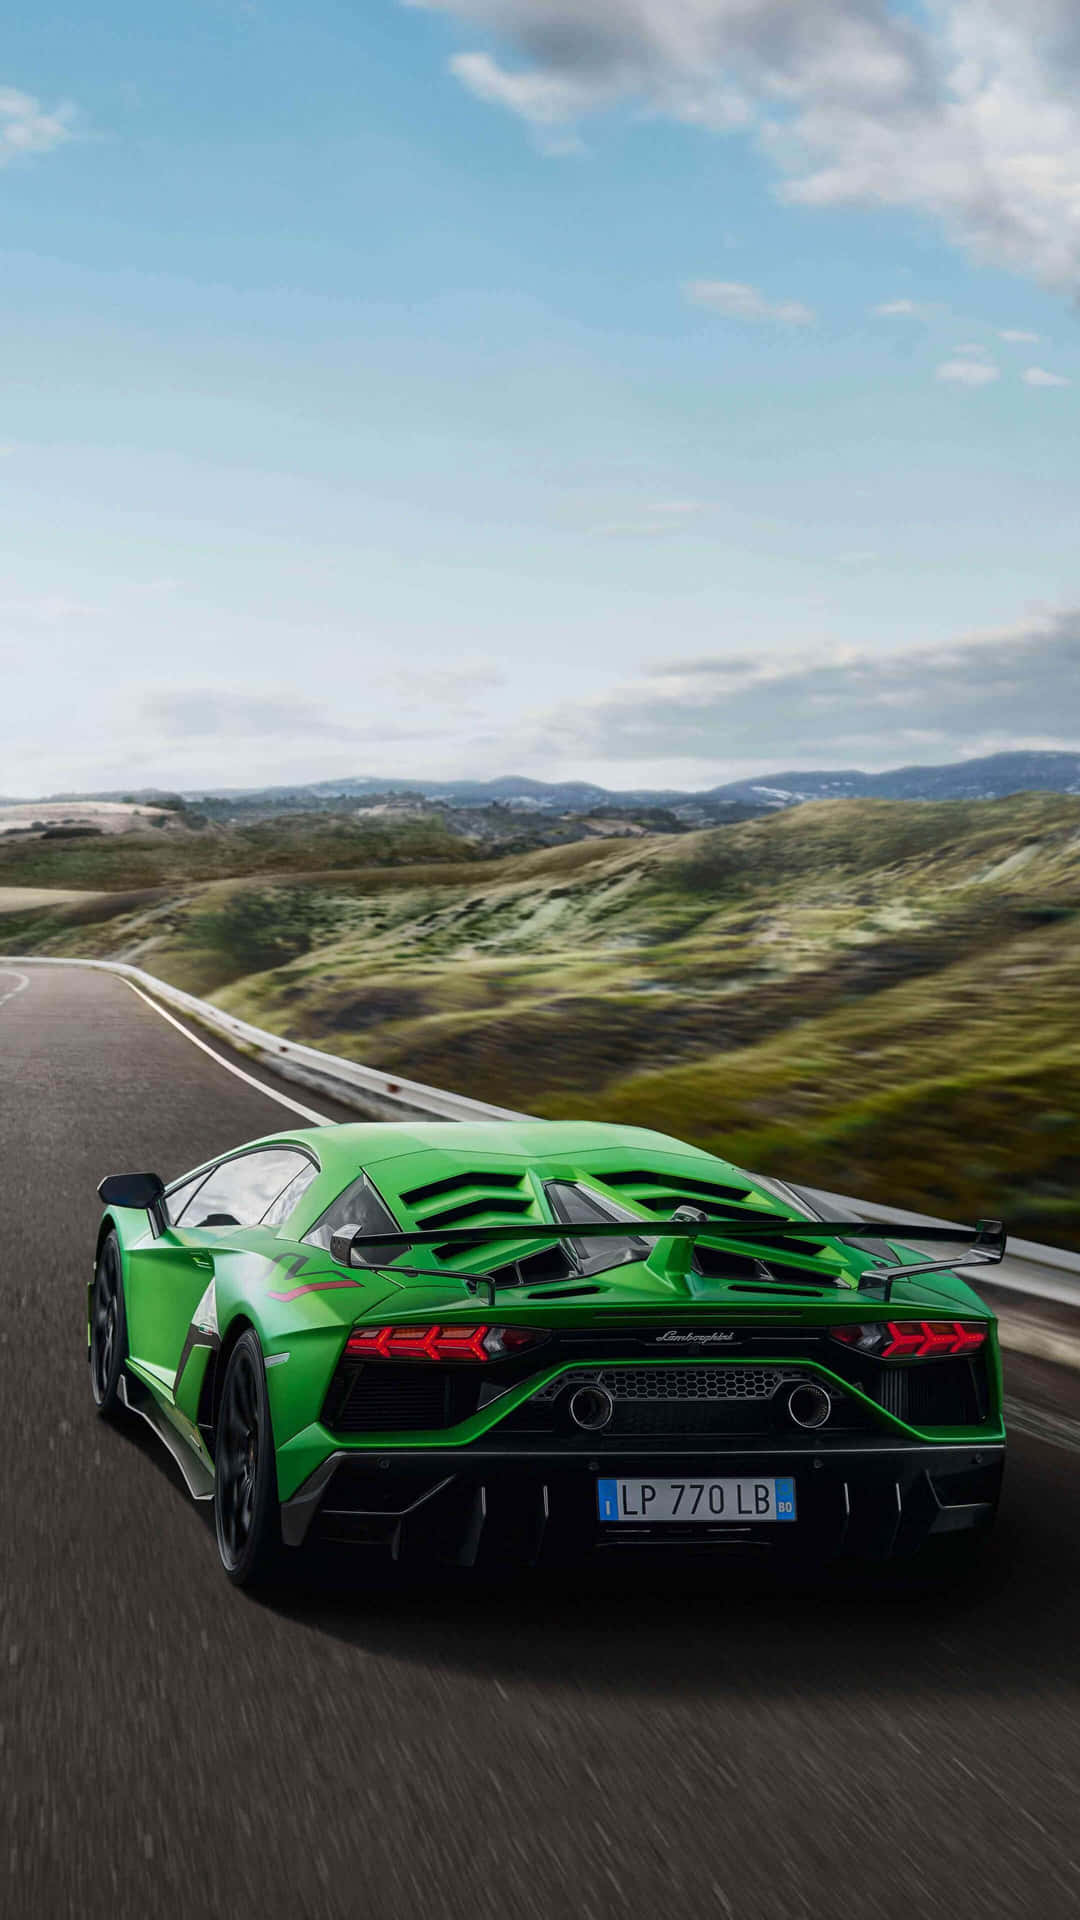 Genießensie Den Luxus Eines Grünen Lamborghini. Wallpaper